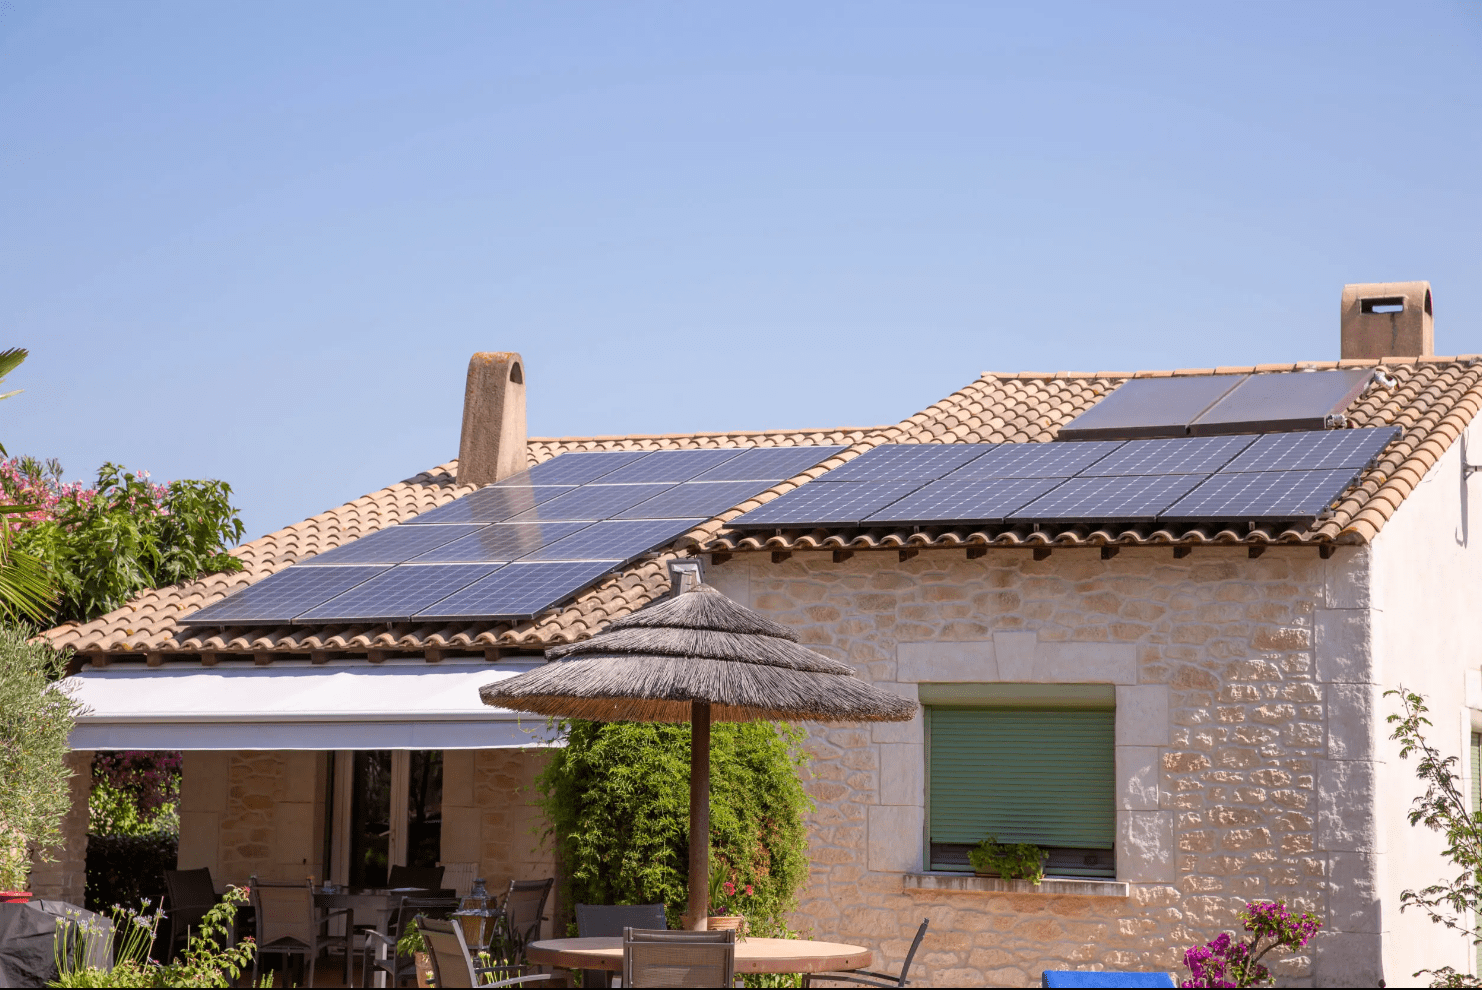 France Environnement installation panneaux solaires